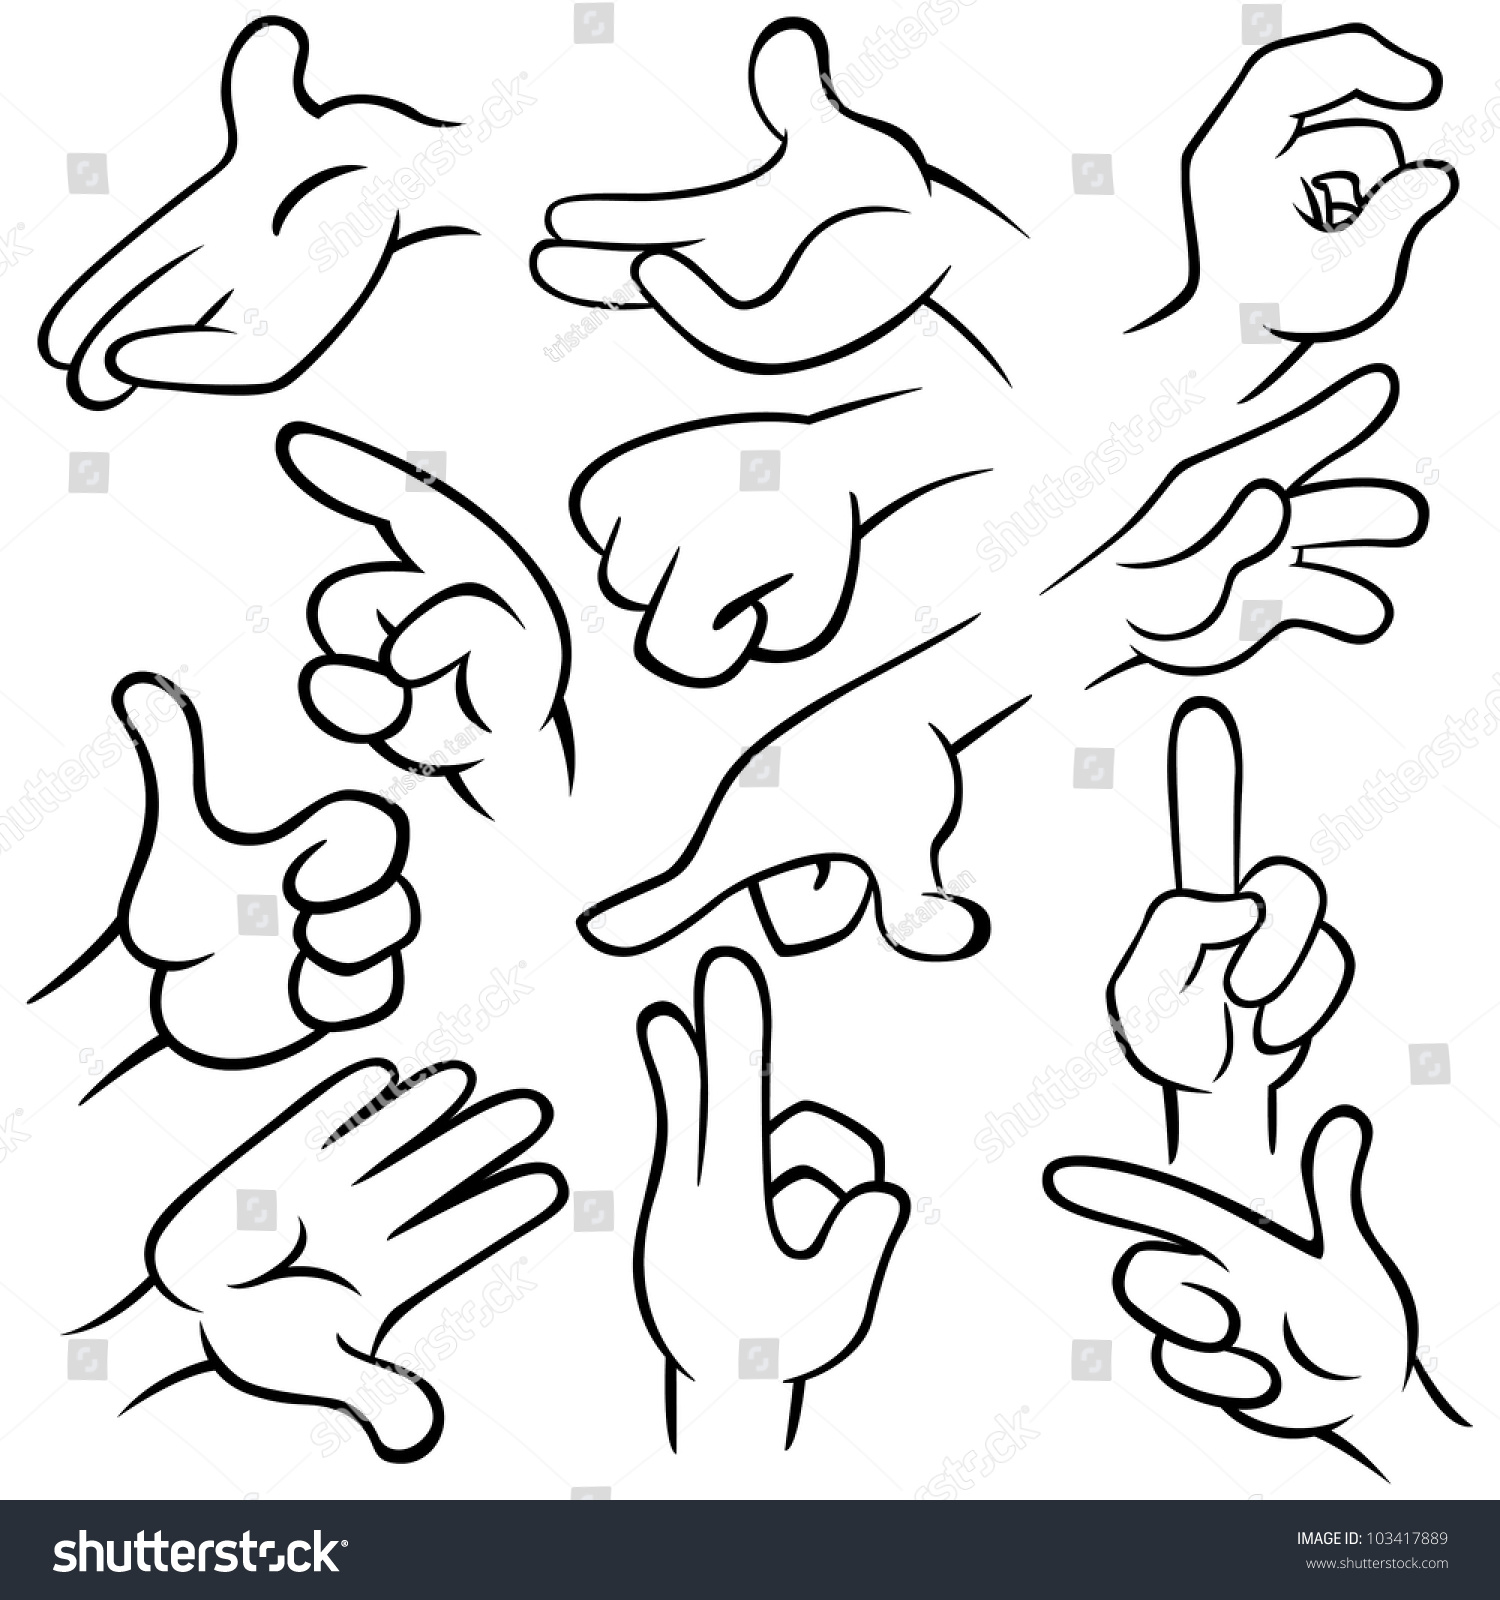 Vector Illustration Of Hands. - 103417889 : Shutterstock